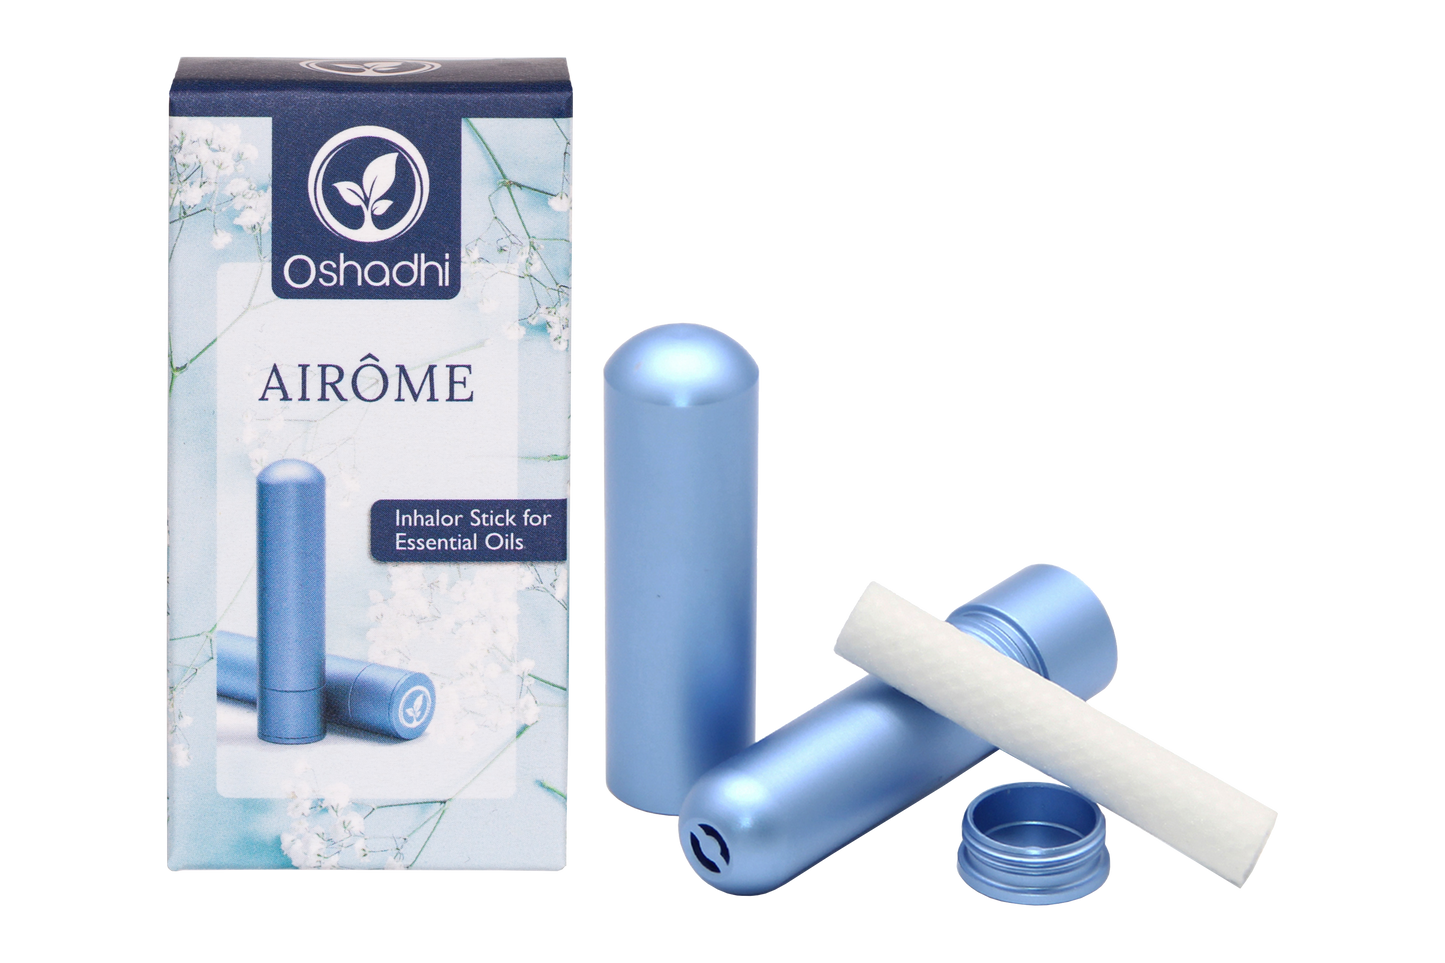 AIROME inhaler